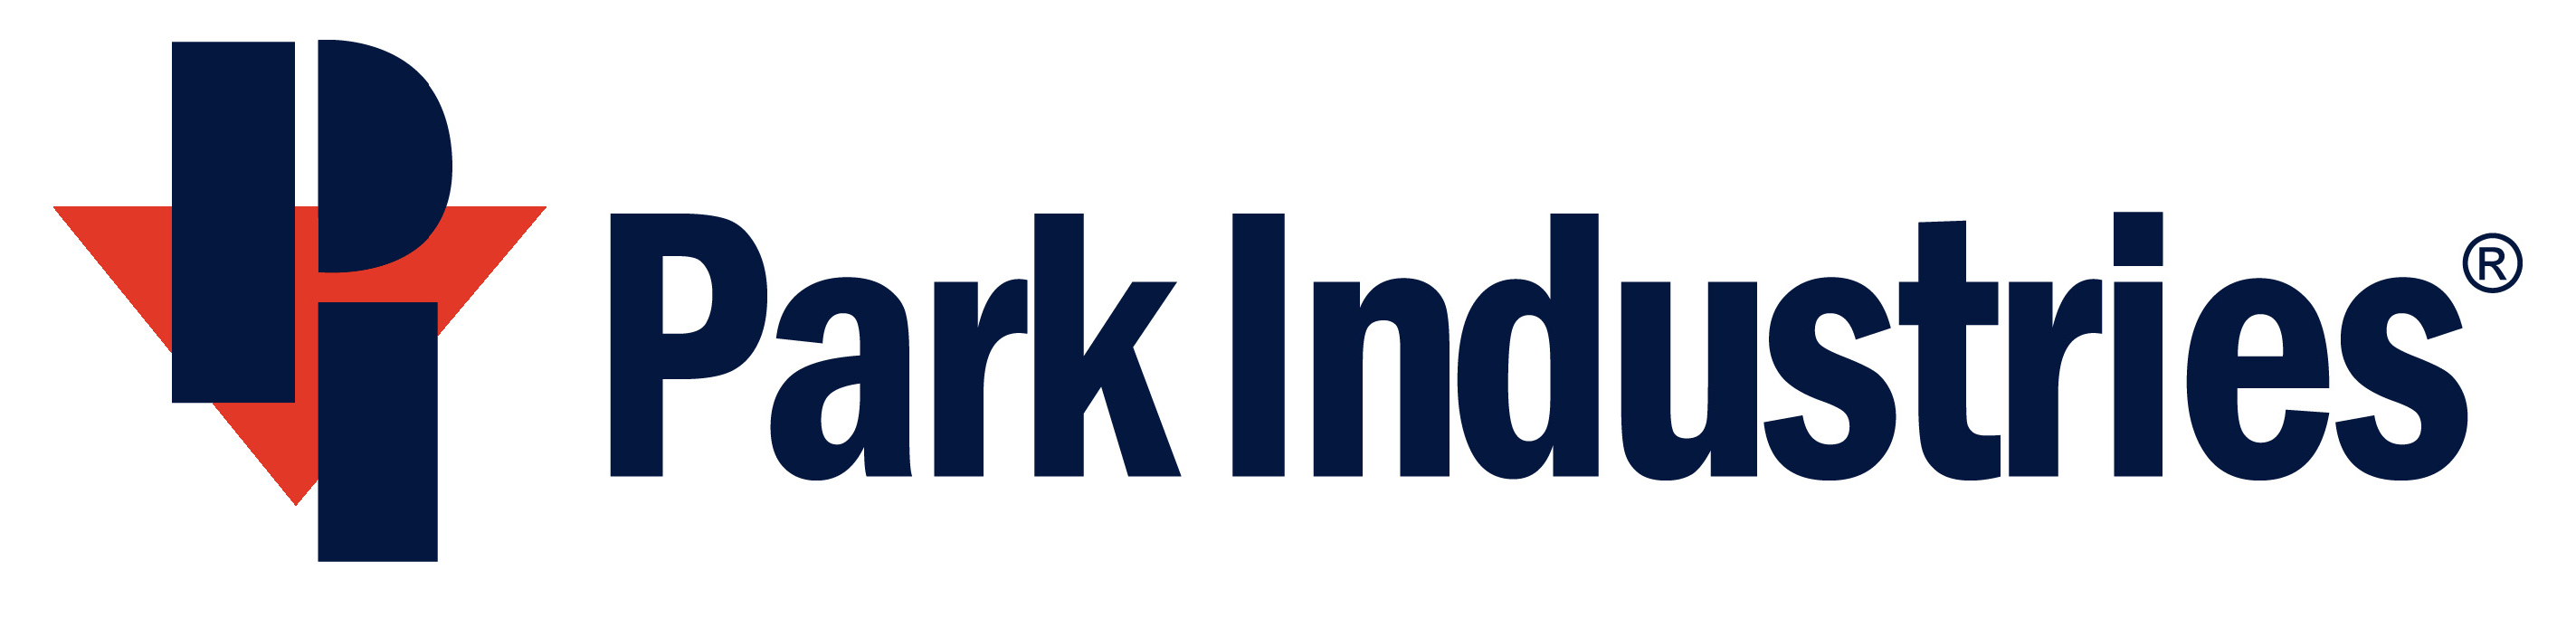 Park Industries